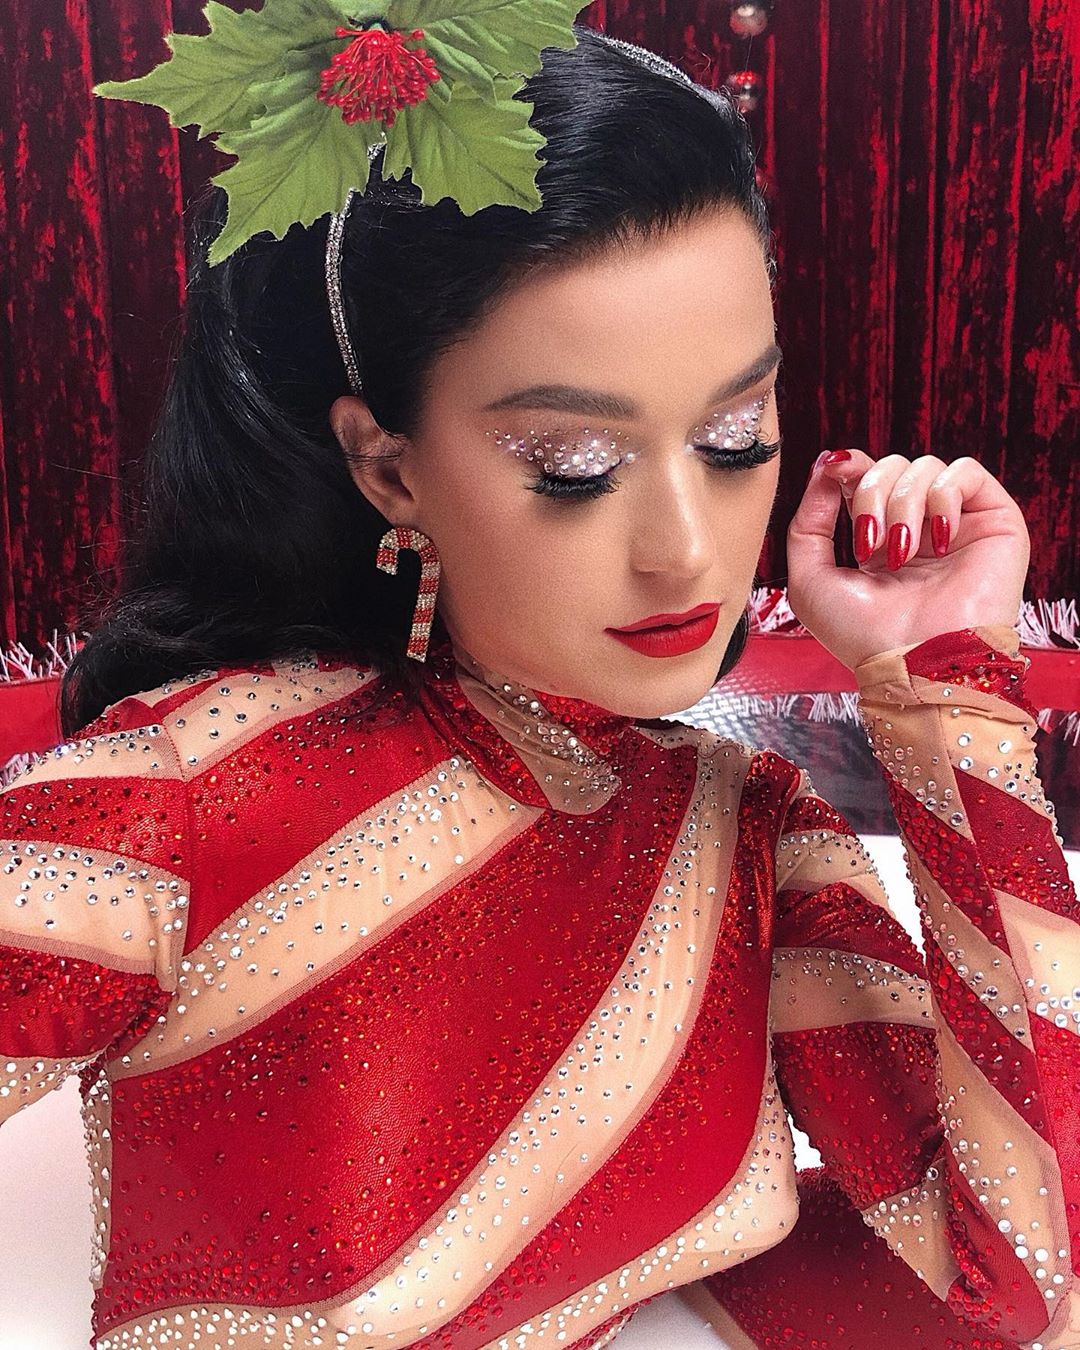 Η Katy Perry έχει τα πιο χριστουγεννιάτικα beauty looks στο τελευταίο της βίντεο κλιπ!